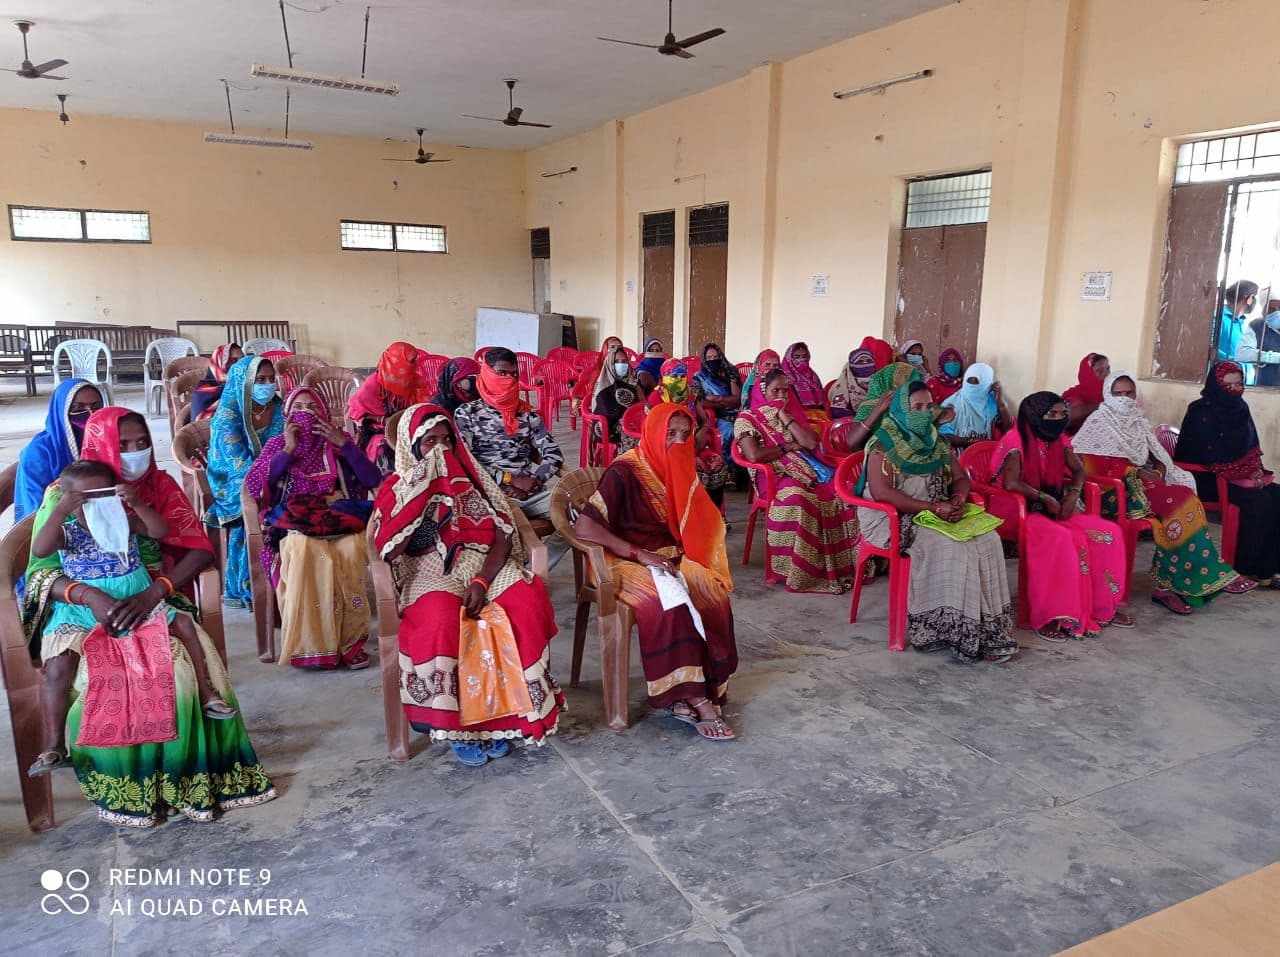 सर्वाधिक पढ़ा जानें वाला जौनपुर का नं. 1 न्यूज पोर्टल गांव में बने सामुदायिक शौचालय हुये समूह की महिलाओं के हवाले| #TejasToday जफराबाद, जौनपुर। सिरकोनी विकास खंड में ग्राम पंचायतों में बने हुए सामुदायिक शौचालय को देख-रेख करने के लिए समूह की महिलाओं को हैंड ओवर कर दिया गया। इस मौके पर खंड विकास अधिकारी राम निहोर सरोज ने कहा कि आप लोग अपने अगल-बगल साफ सफाई का ध्यान रखें। जो भी घर के सदस्य बाहर जा रहे हों, उन्हें बिना मास्क लगाए बाहर न जाने दें। साफ-सफाई रहने से आप अपने परिवार को बीमारियों से बचा सकते हैं। सीडीपीओ मनोज वर्मा ने कहा कि समूह की महिलाओं को कोटेदार से राशन रिसीव करके आंगनवाड़ी महिलाओं के माध्यम से लाभार्थियों को बंटवाना होगा। समूह की महिलाएं हर सेंटर पर जाकर आगनवाड़ी के साथ लाभार्थियों को राशन दिलवाने का काम करेंगी तथा एक अपना रजिस्टर तैयार करेंगी। एडीओ आईएसबी संजीव रतन ने कहा कि हम समूह की महिलाओं को रजिस्टर देंगे जिस पर वह सब कुछ अंकित कर सकें। शौचालय का देख-रेख उनके जिम्मे रहेगा। उसके लिए सरकार की तरफ से उनको मानदेय दिया जाएगा। सरकार की मंशा है कि महिलाओं को स्वरोजगार देकर स्वावलंबी बनाया जाय जिससे वह अपने पैर पर खड़ी हो सके। इस मौके पर खंड विकास अधिकारी राम निहोर सरोज, एडीओ अश्विनी कुमार, संजीव रतन, मनोज वर्मा सहित ग्राम पंचायत अधिकारी ग्राम प्रधान एवं समूह की महिलाएं उपस्थित रहीं।